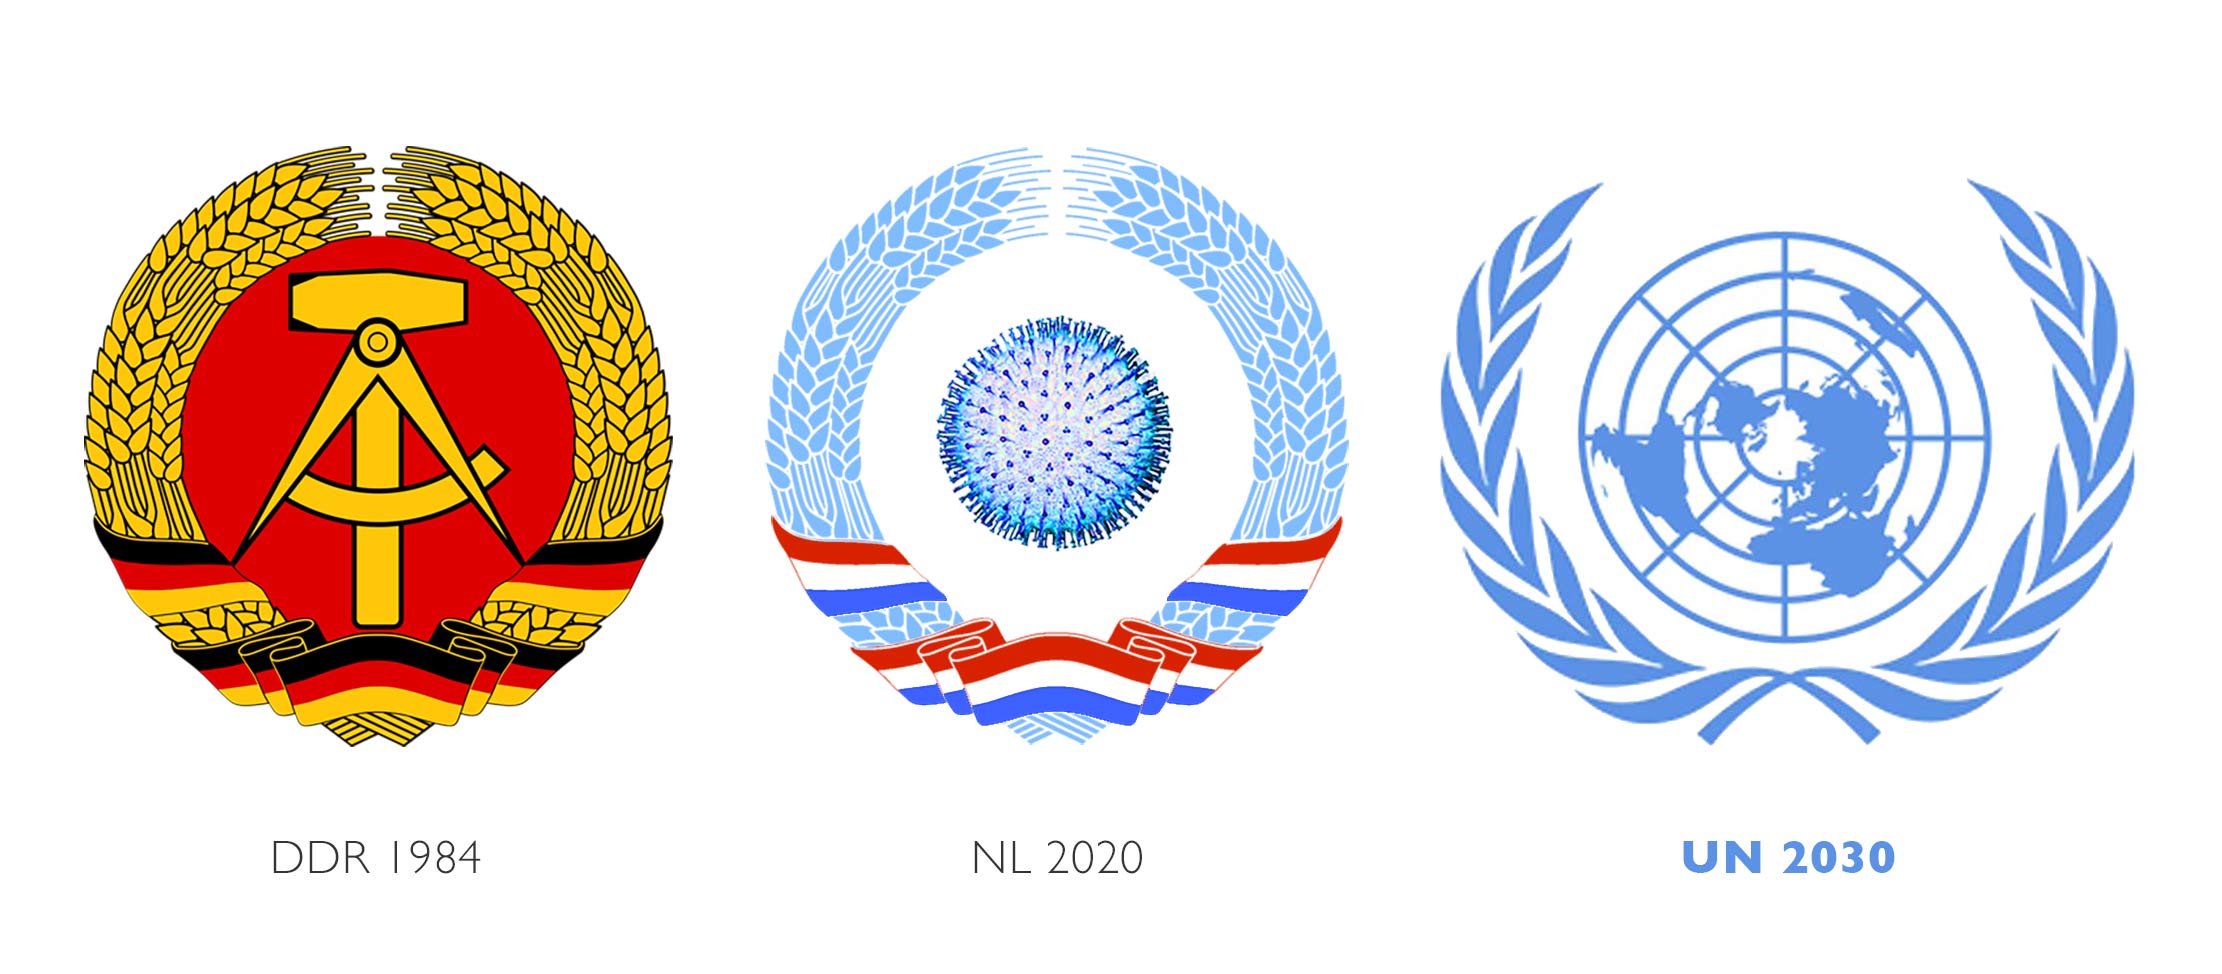 Officiële emblemen van de DDR en de UN. Nieuw Normaal van NL in 2020